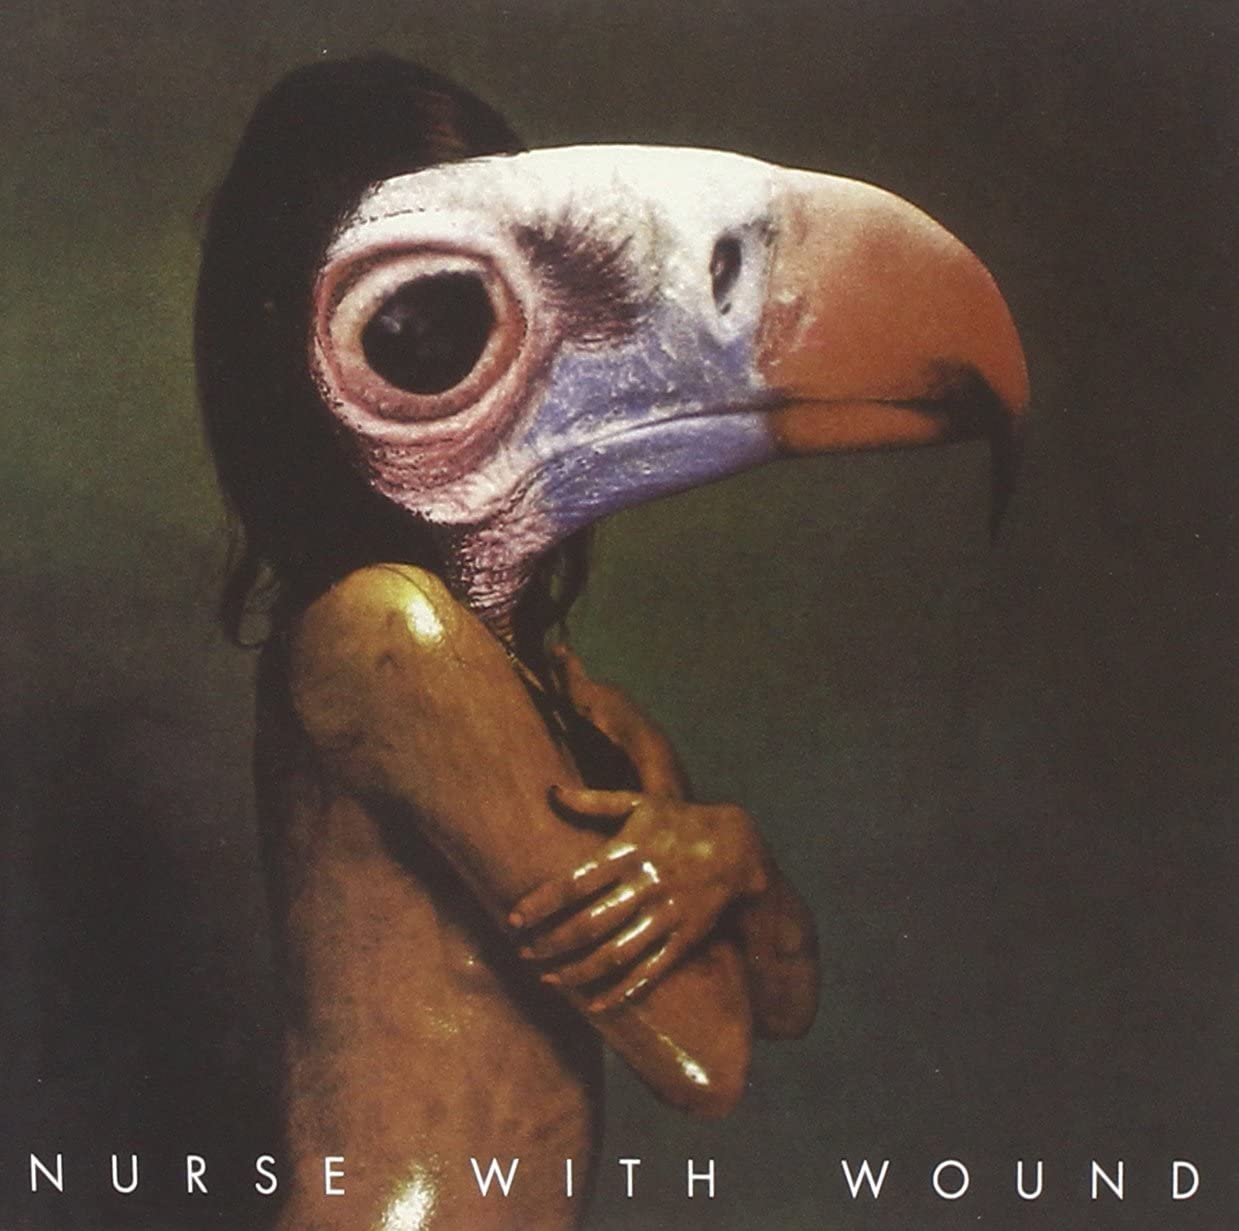 Nurse With Wound - A Sucked Orange/Scrag - 2CD